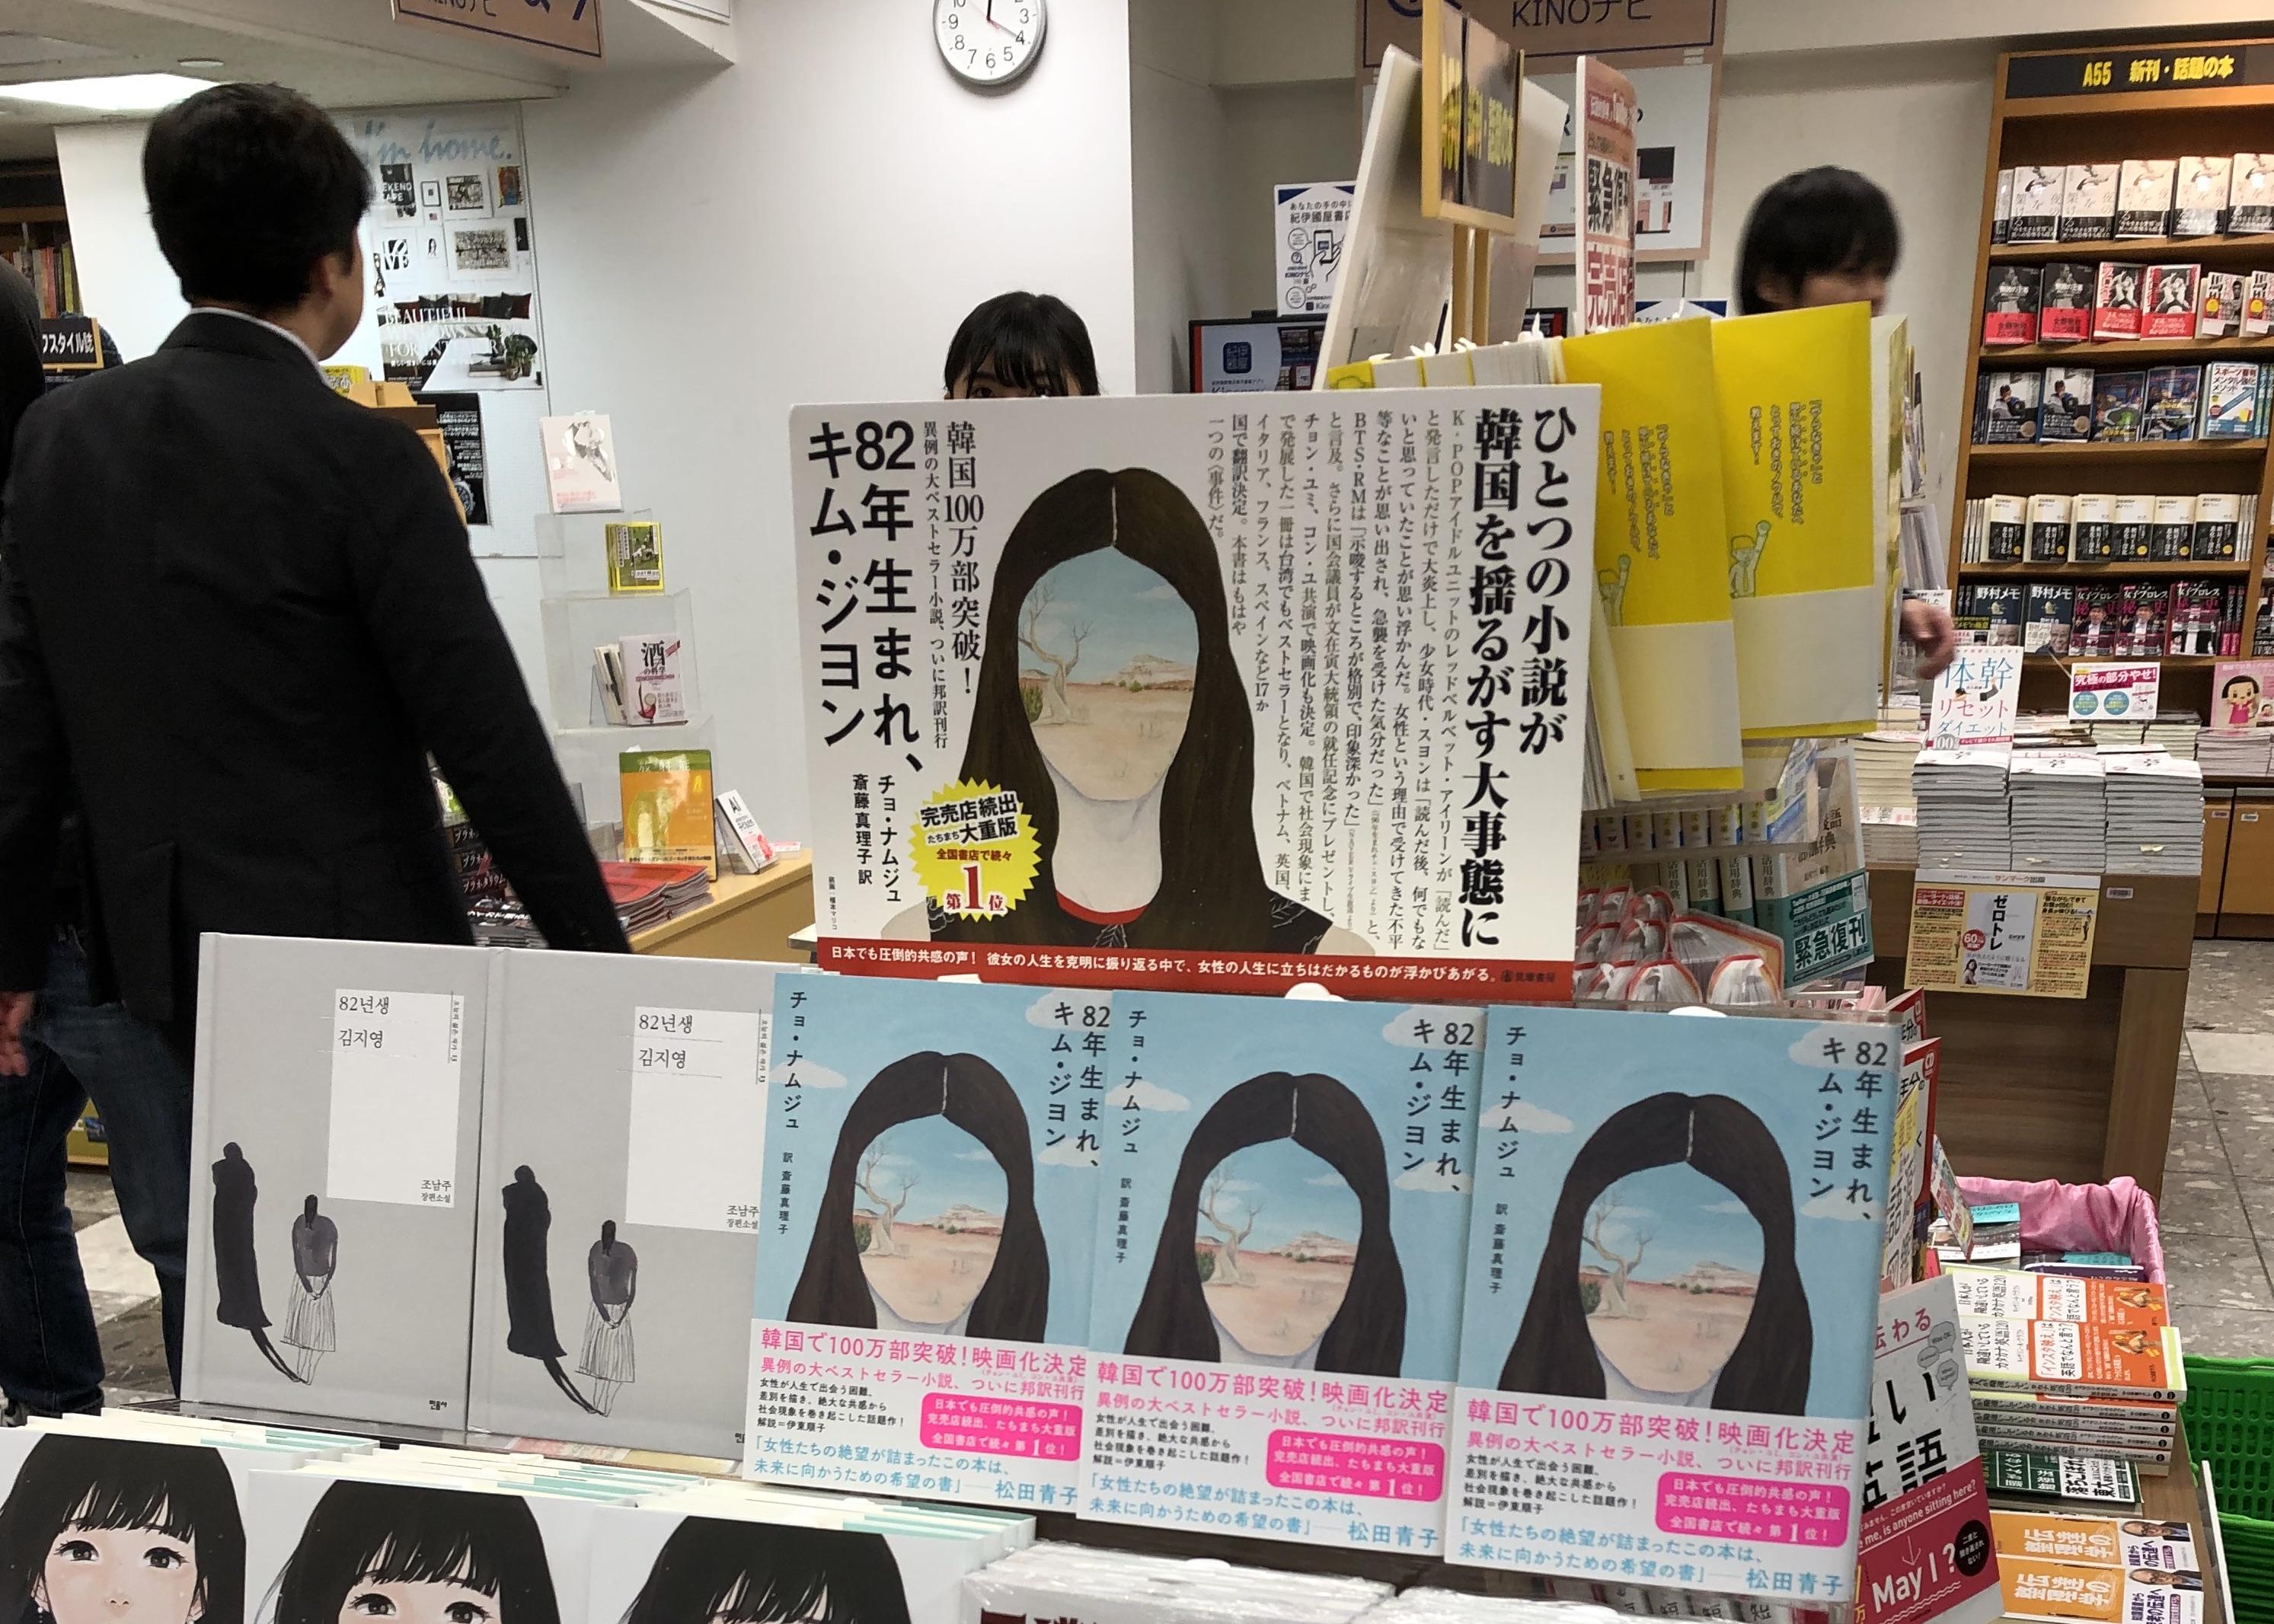 82年生まれ、キム・ジヨン』韓国で100万部なぜ売れた？女性たちの反撃は日本でも共感されるか | Business Insider Japan